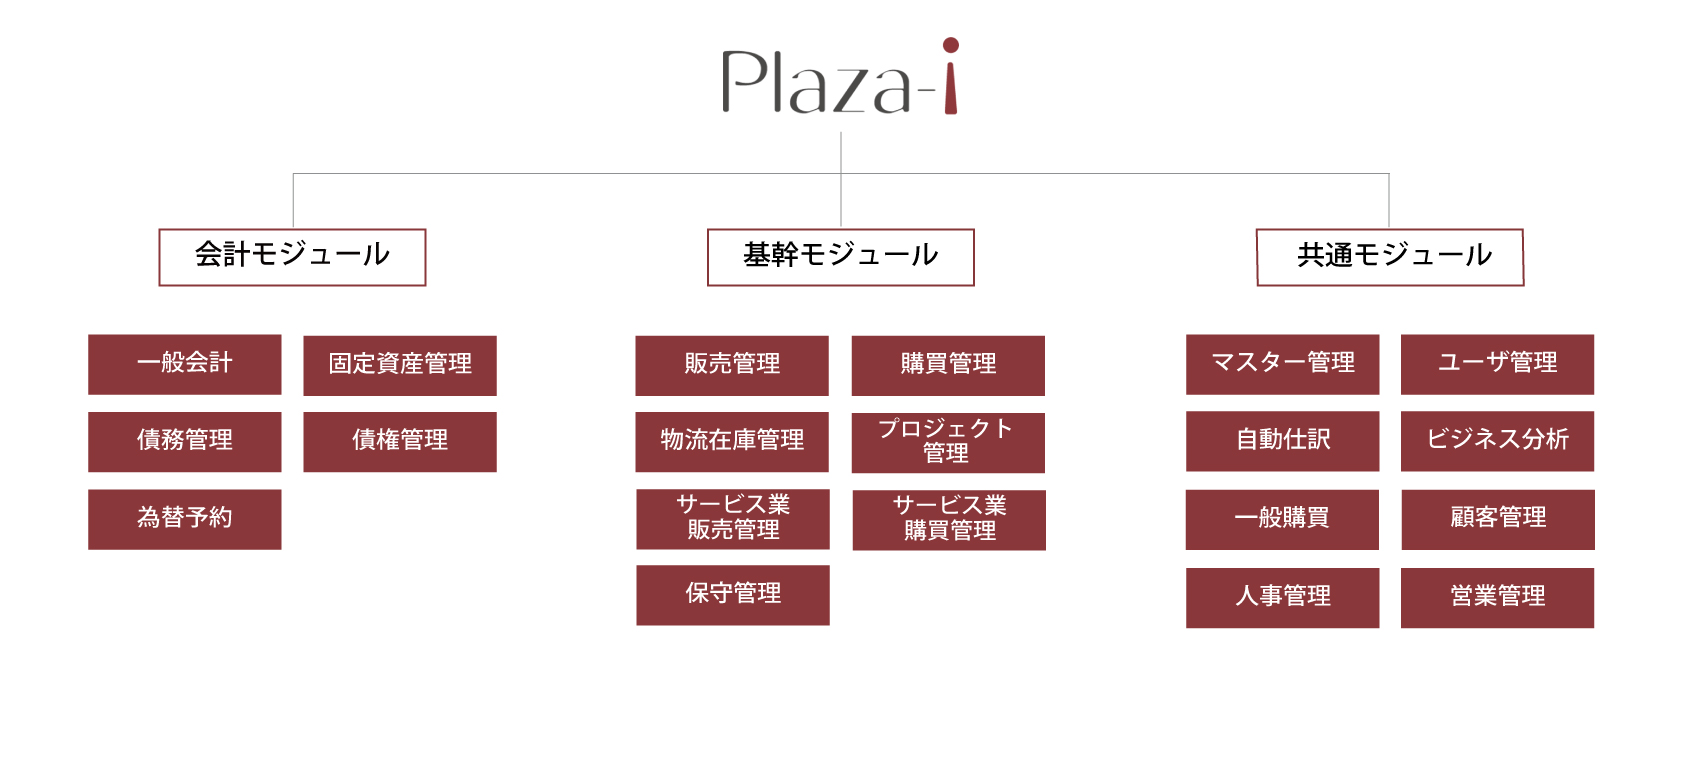 plaza-i_diagram_1